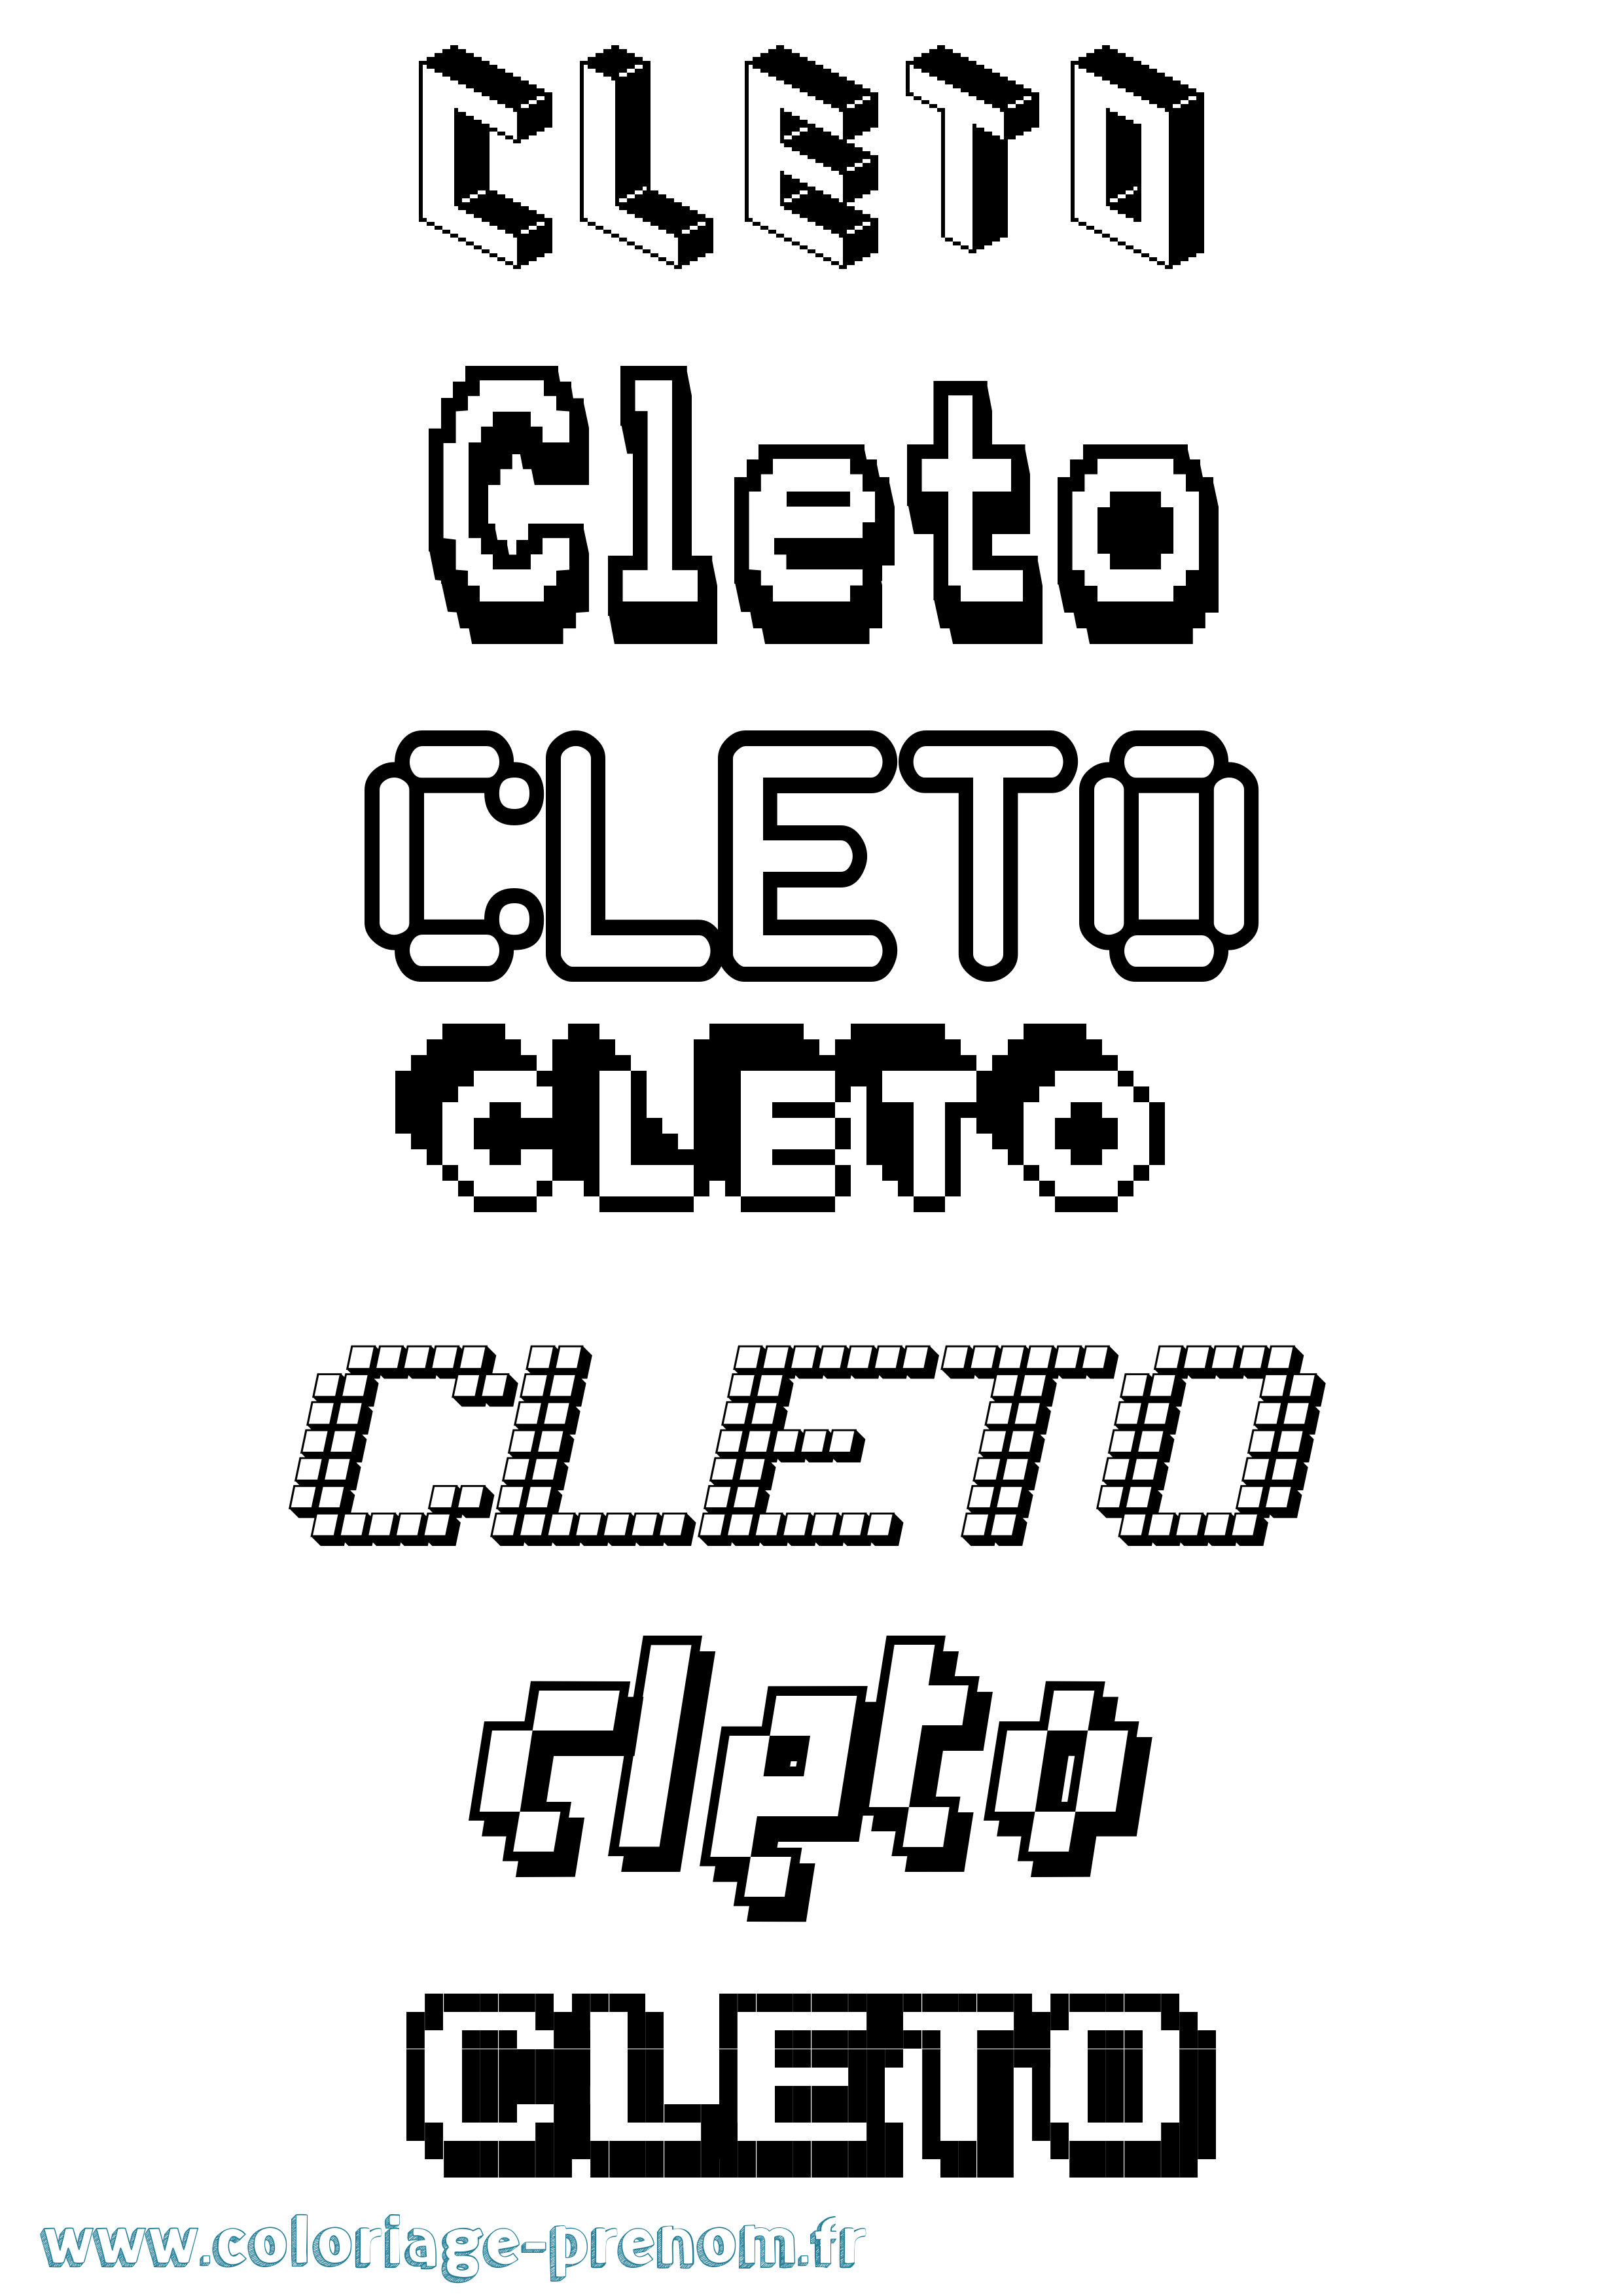 Coloriage prénom Cleto Pixel